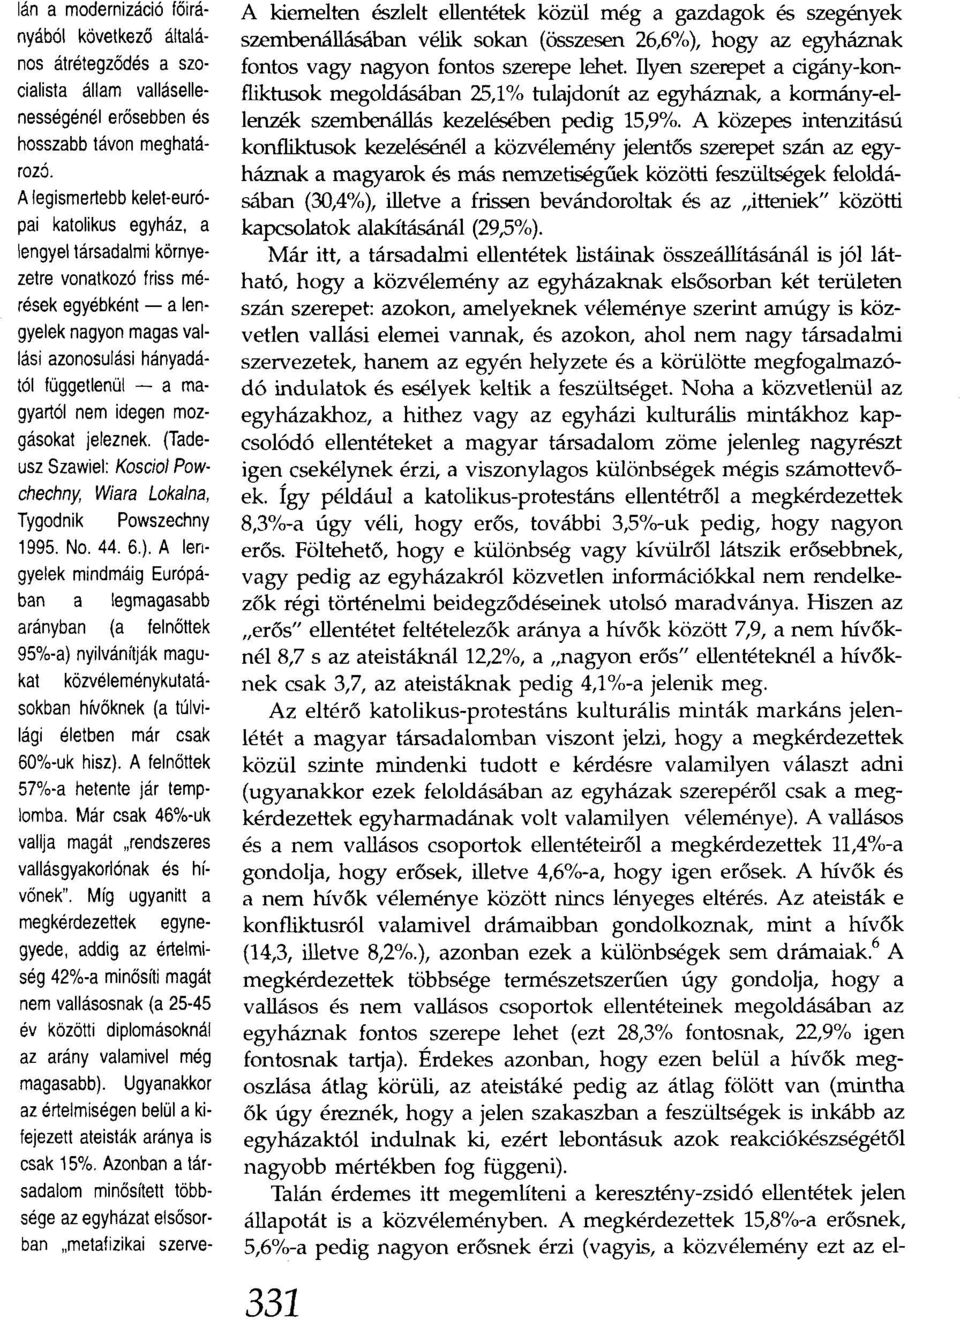 nem idegen mozgásokat jeleznek. (Tadeusz Szawiel: Koscio/ Powchechny, W/ara Loka/na, Tygodnik Powszechny 1995. No. 44. 6.).